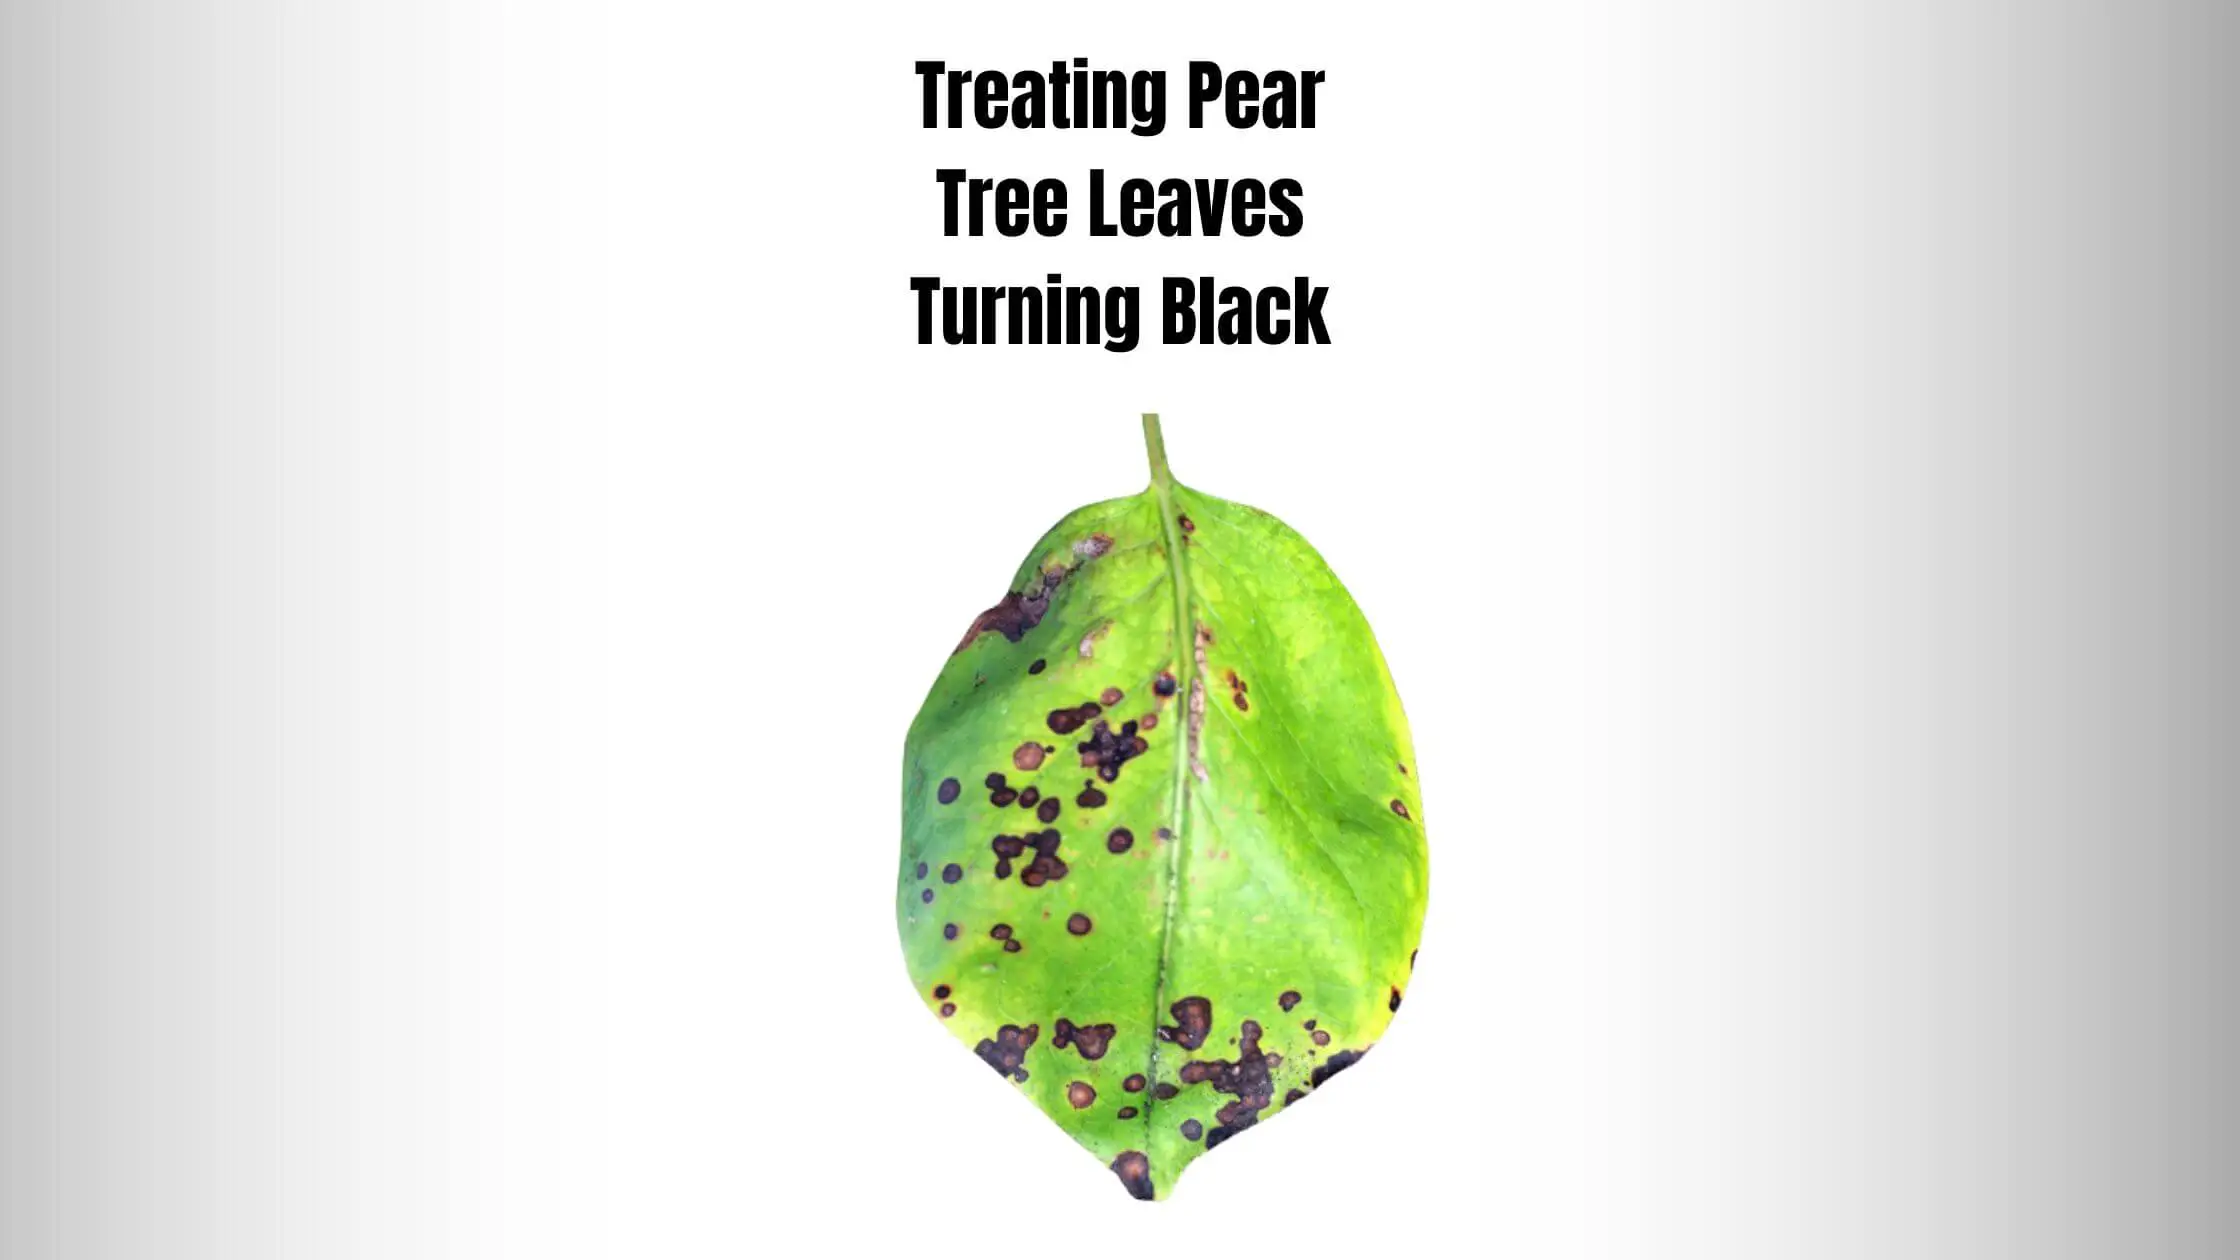 Treating Pear Tree Leaves Turning Black